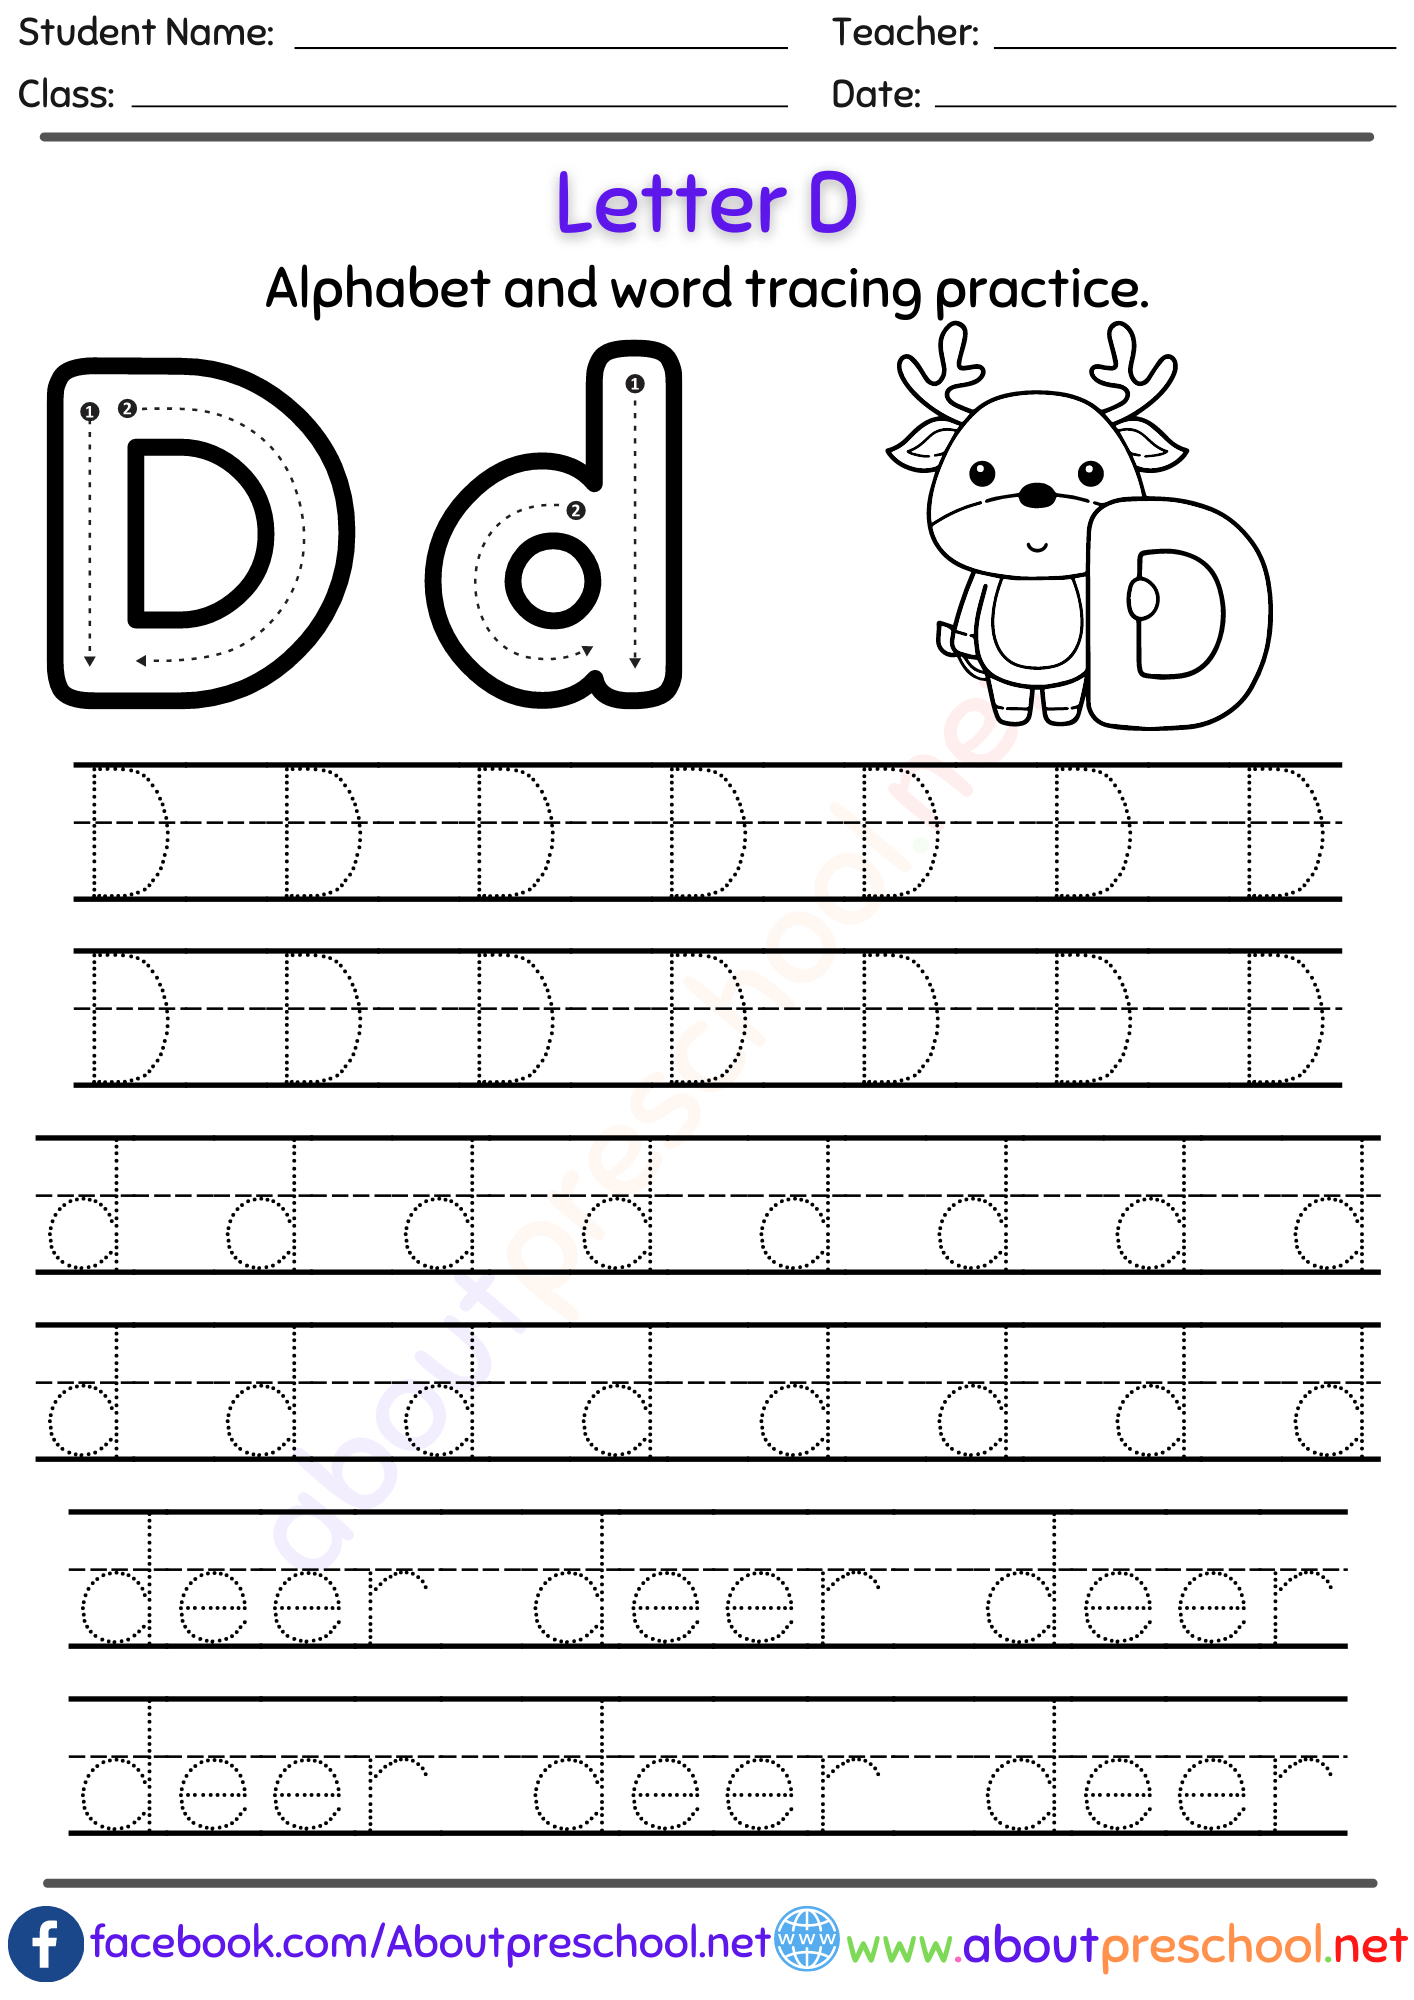 Letter D Alphabet tracing worksheets